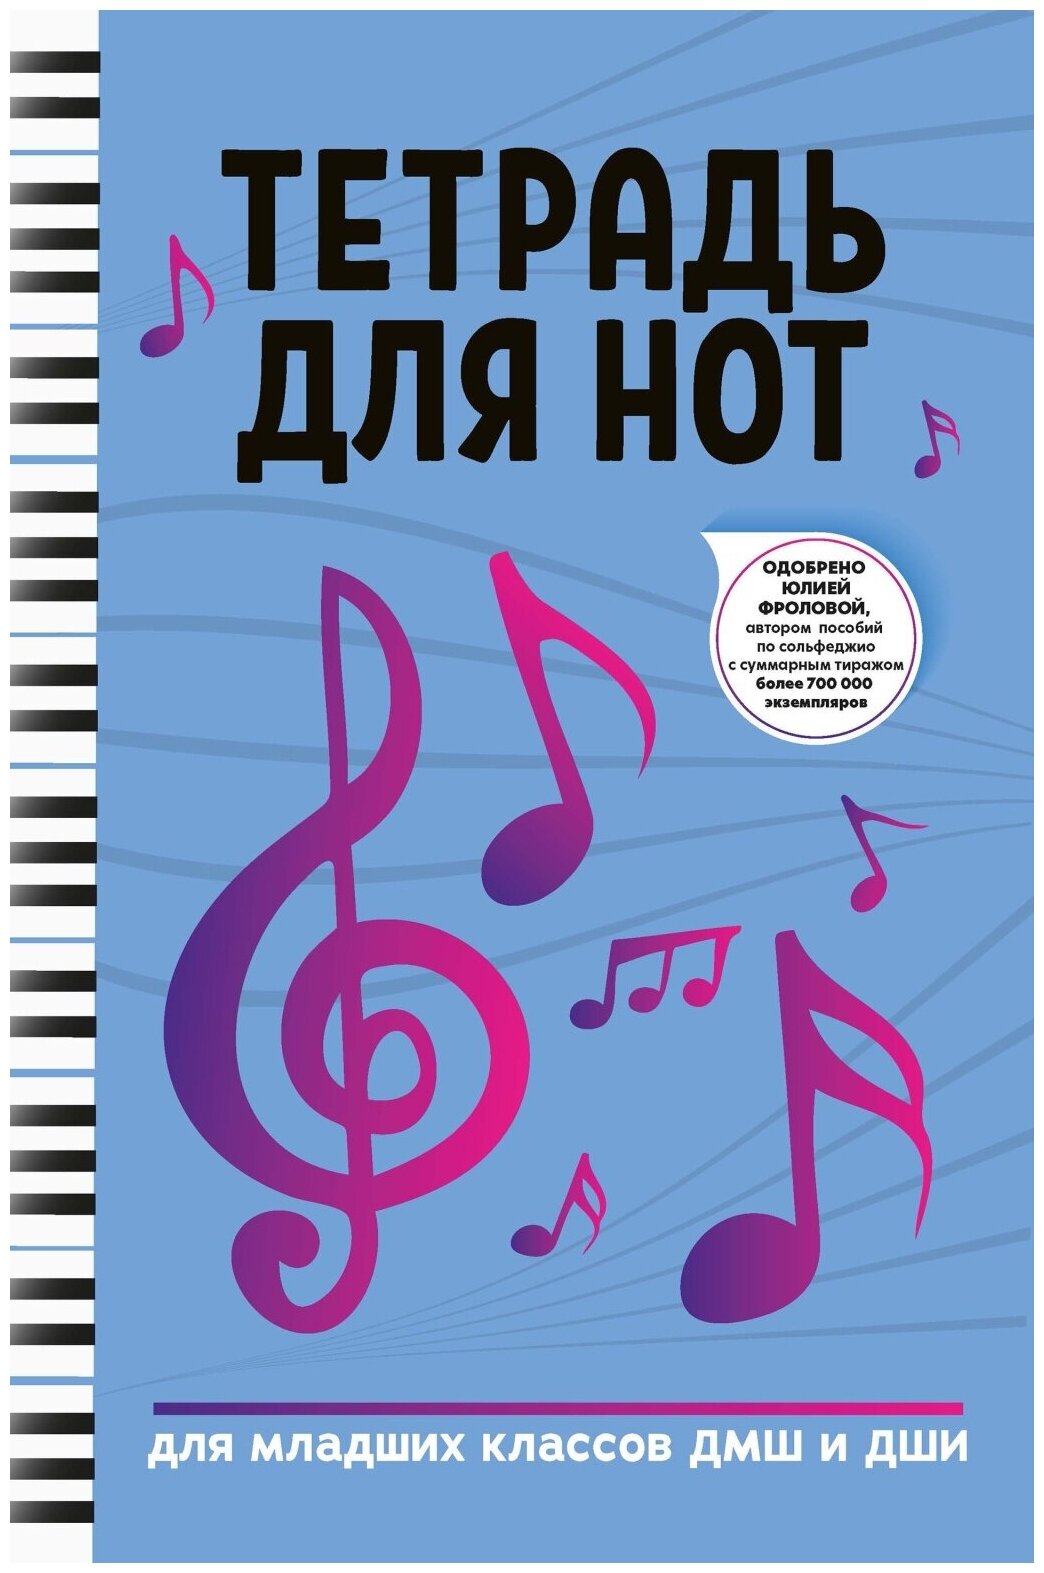 Тетрадь для нот для младших классов ДМШ и ДШИ, (ноты, фиолетовый цвет), издательство "Феникс"